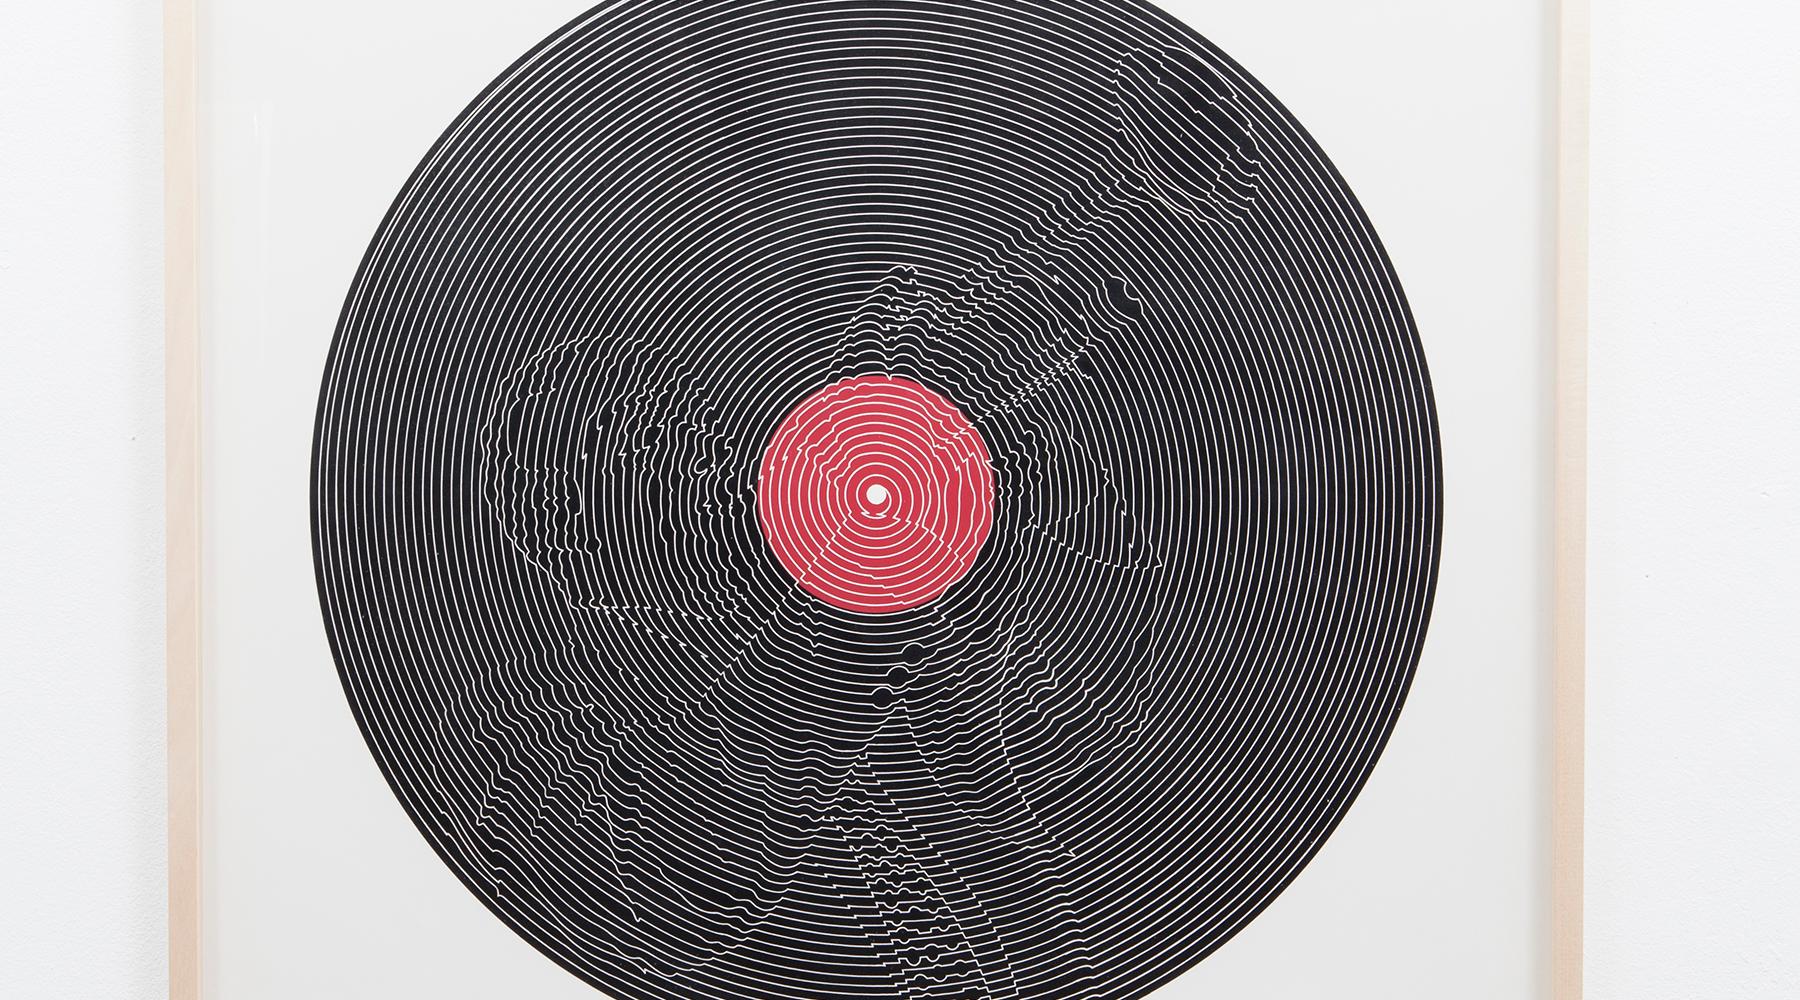 Serigrafie von Thomas Bayrle, Deutschland, 1970.

Diese Serigraphie zeigt einen Druck einer Schallplatte. Thomas Bayrle schafft durch die Verformung des ursprünglichen Musters eine neue Komposition, aus der die Silhouette eines Musikers hervorgeht.